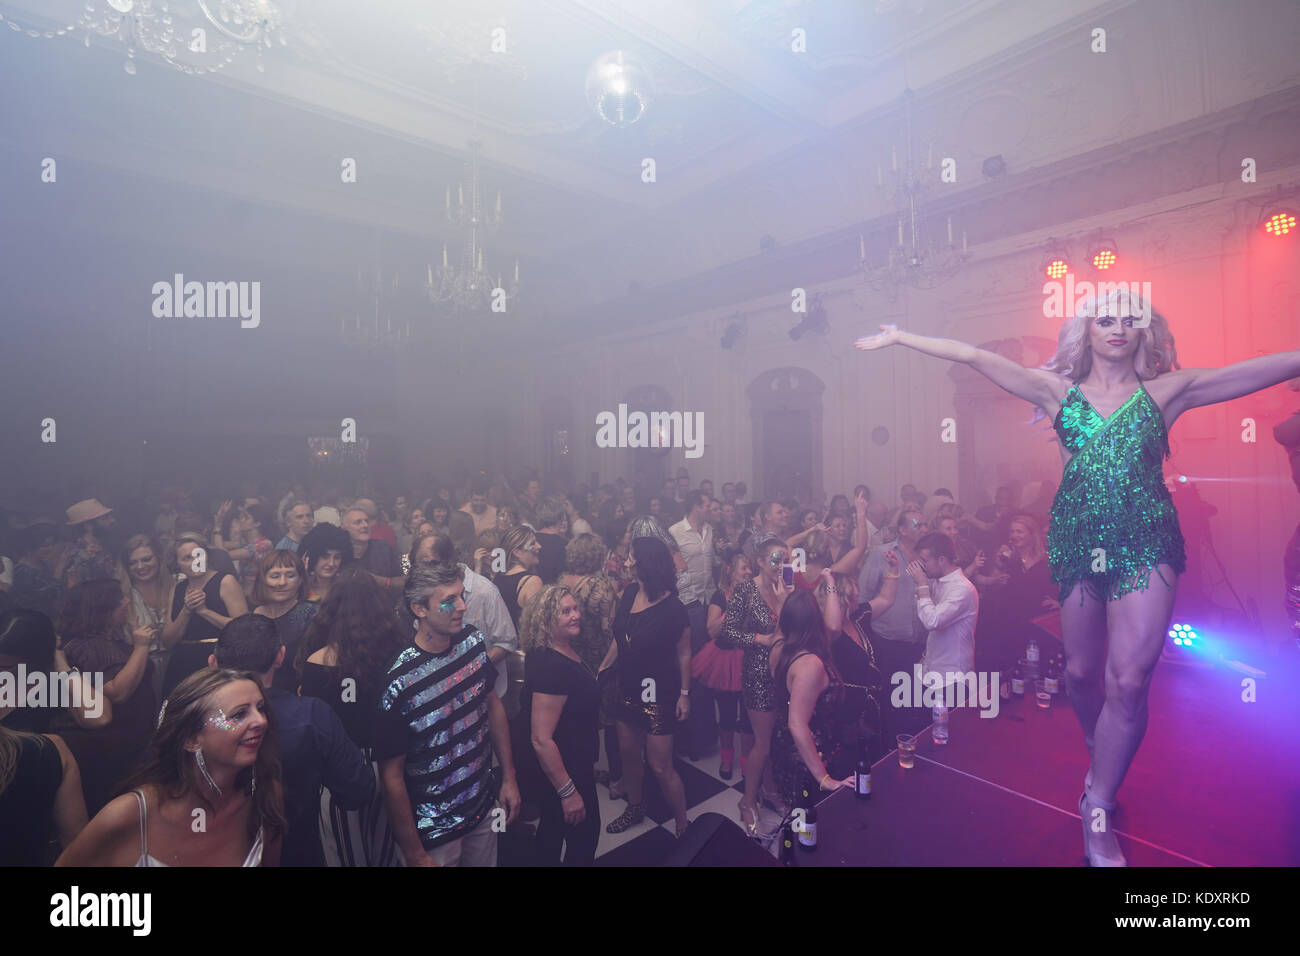 Der Glanz Widerstand bieten Ihren in der disco club Nacht verlor mit dem Haus Eden Burlesque Tänzerinnen im Bush Hall in London. foto Datum: Samstag, o Stockfoto